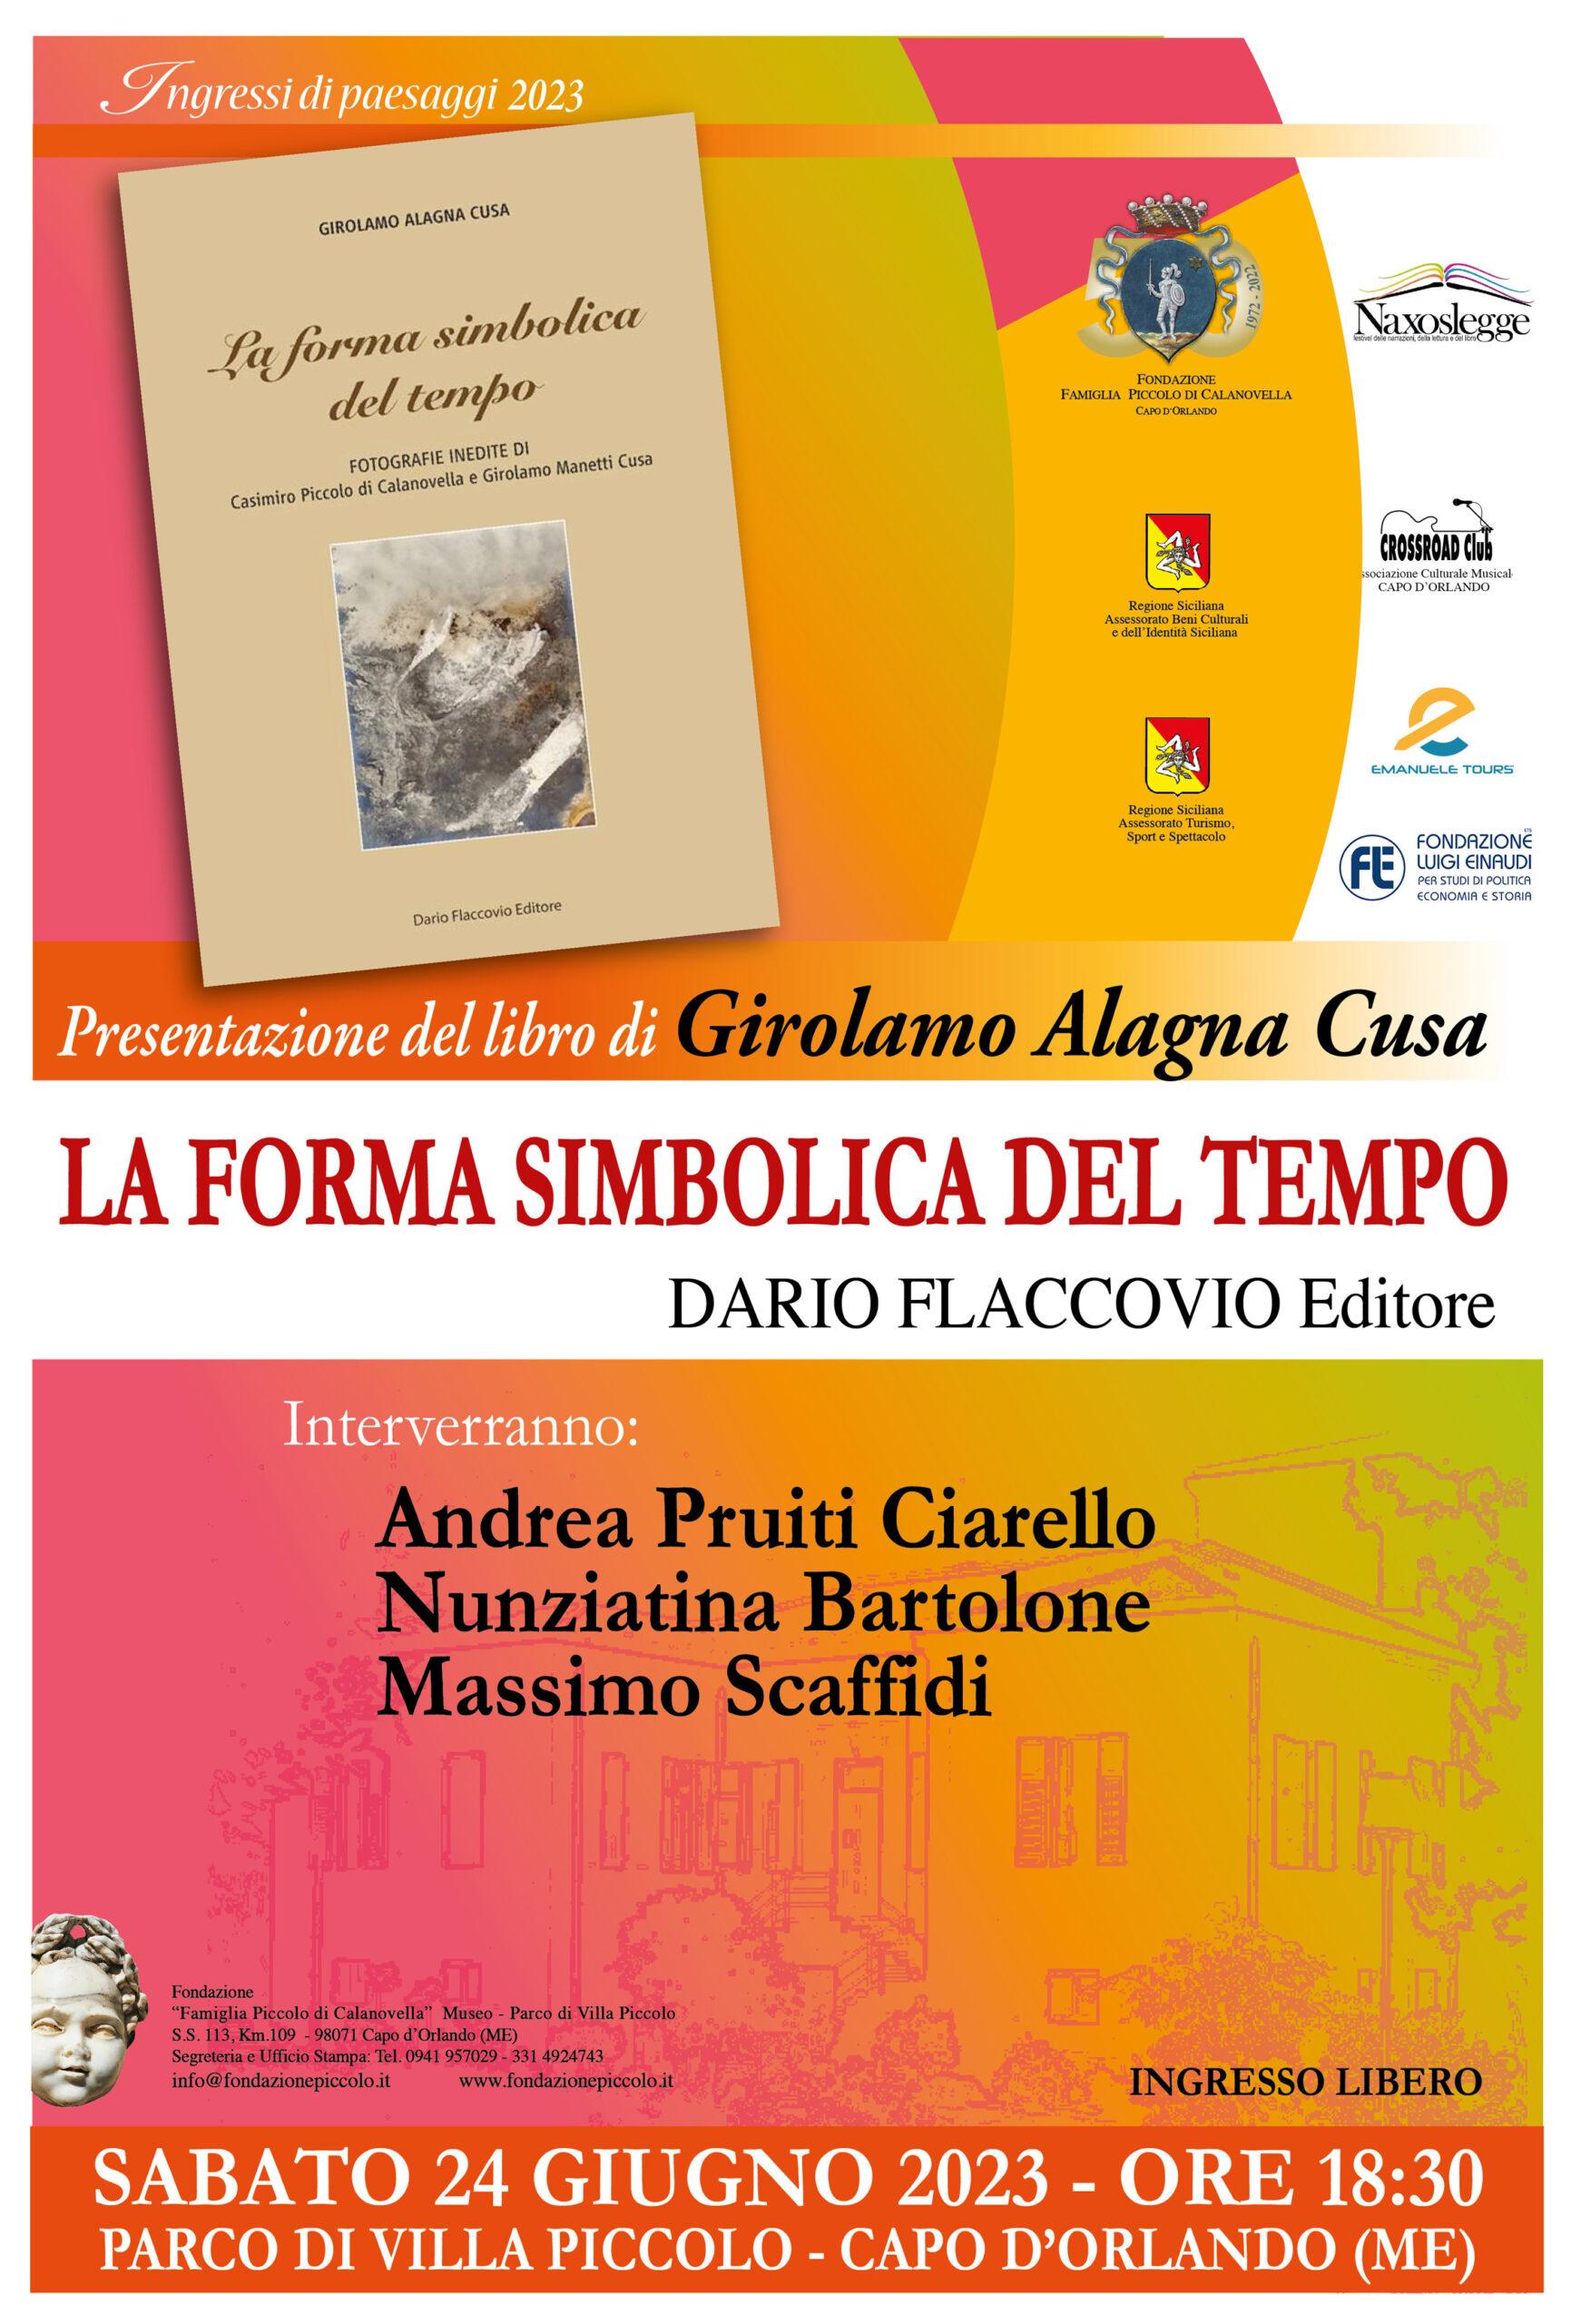 Presentazione del libro “La forma simbolica del tempo” di Girolamo Alagna Cusa, a Villa Piccolo – Capo d’Orlando